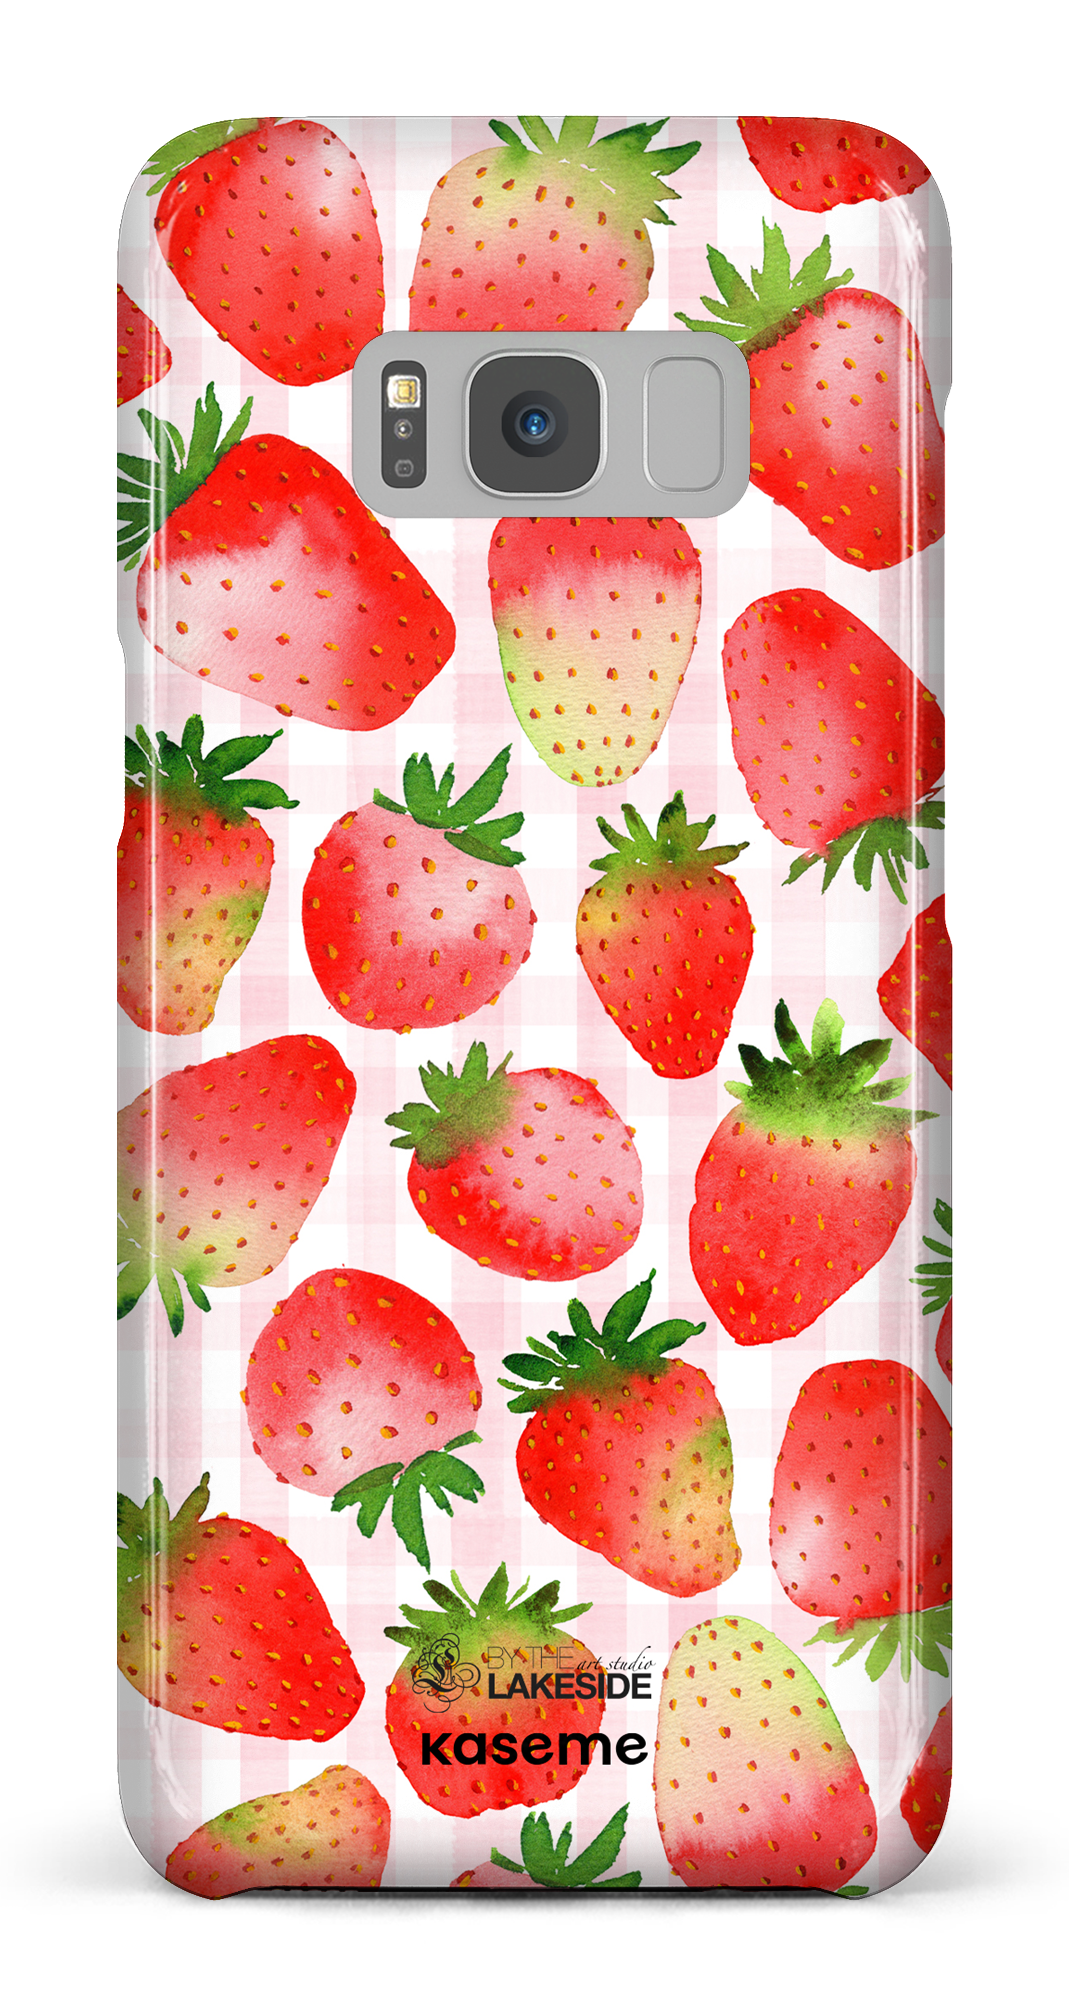 Strawberry Fields by Pooja Umrani - Galaxy S8